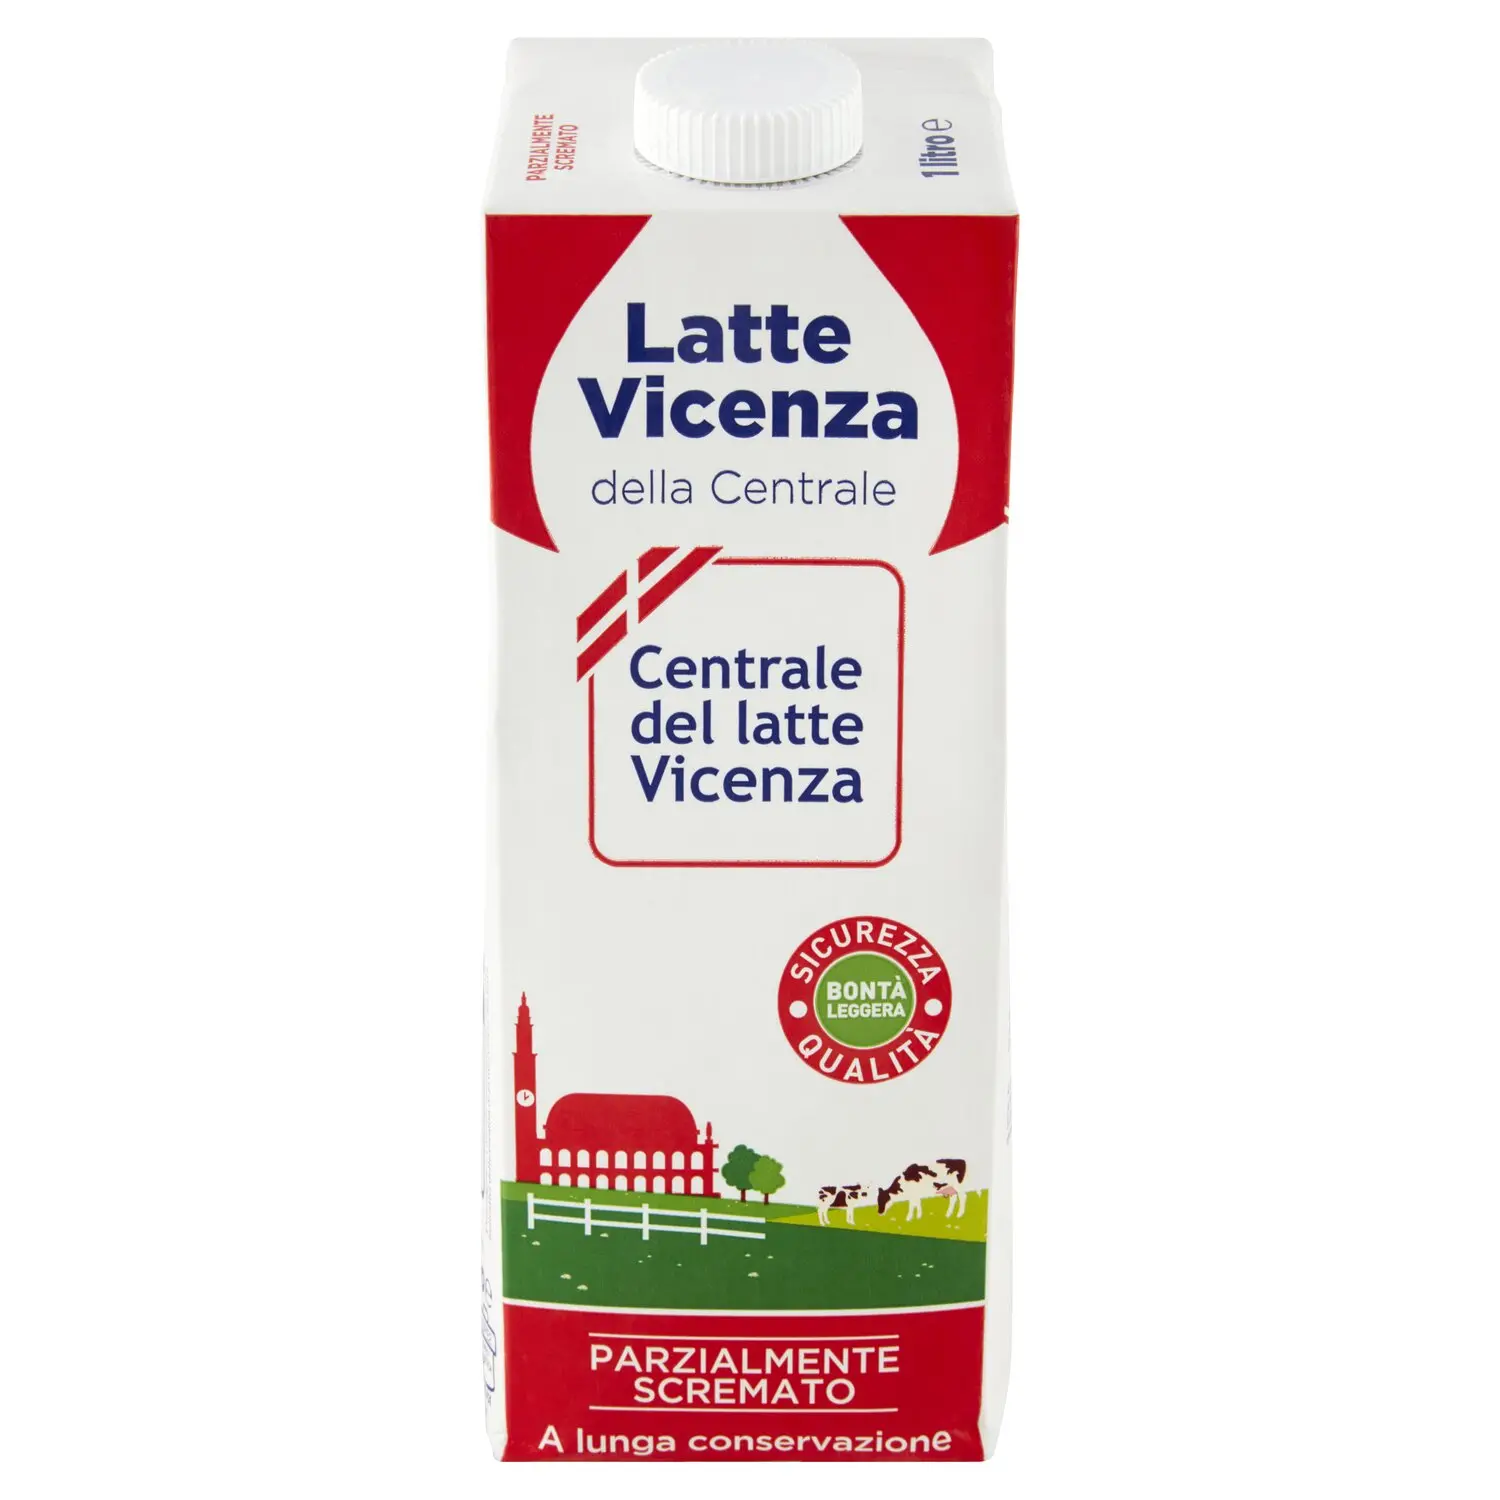 Centrale del latte Vicenza Latte Vicenza della Centrale Parz. Scremato a lunga  conservazione 1 litro